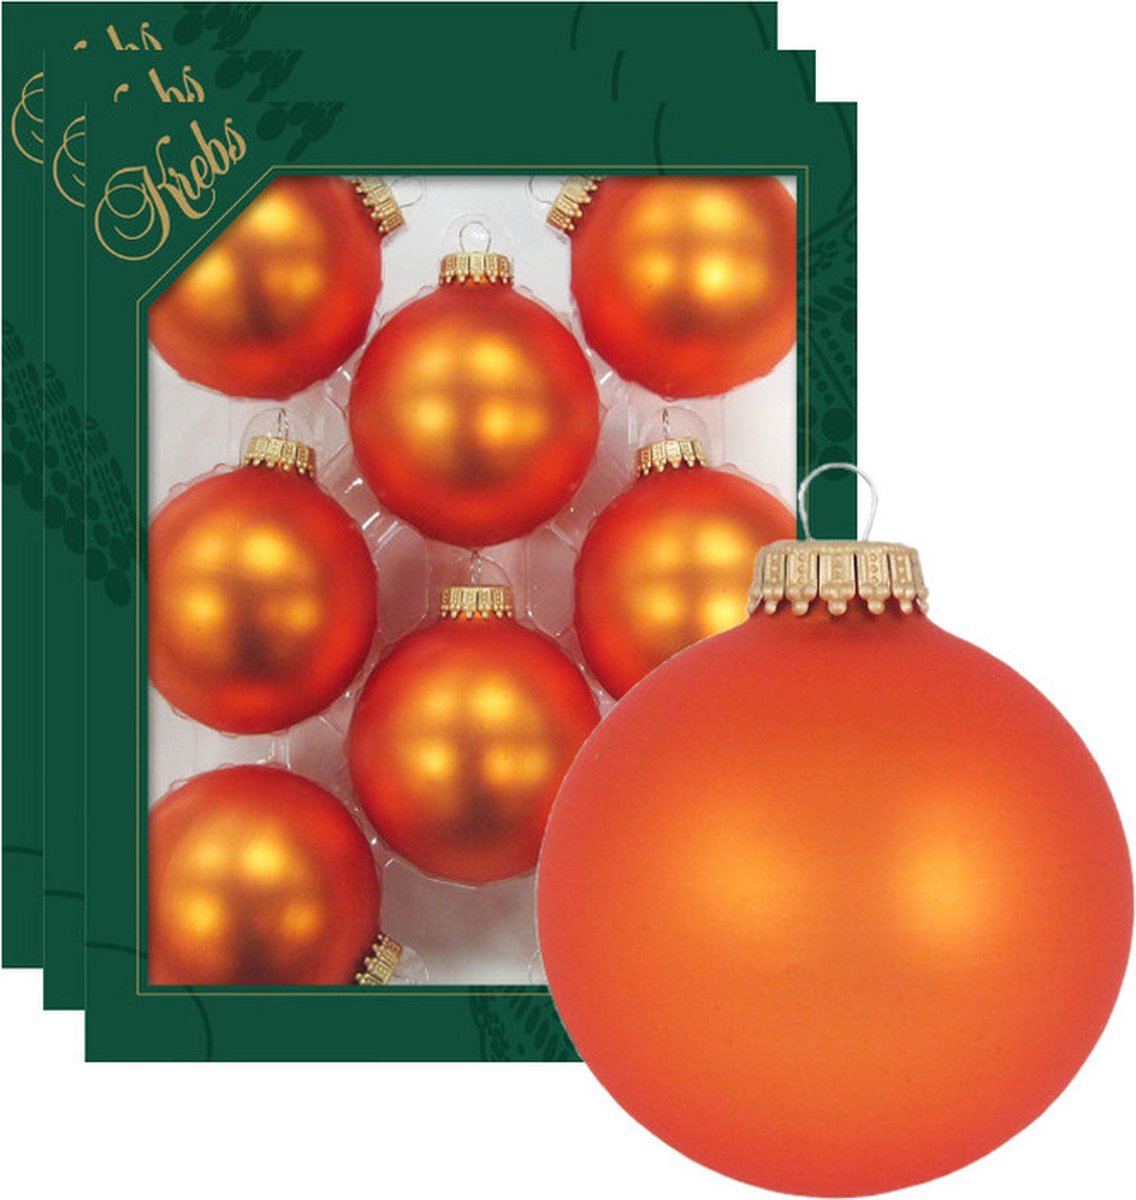 24x Wildfire Velvet oranje glazen kerstballen 7 cm kerstboomversiering - mat - Kerstversiering/kerstdecoratie oranje